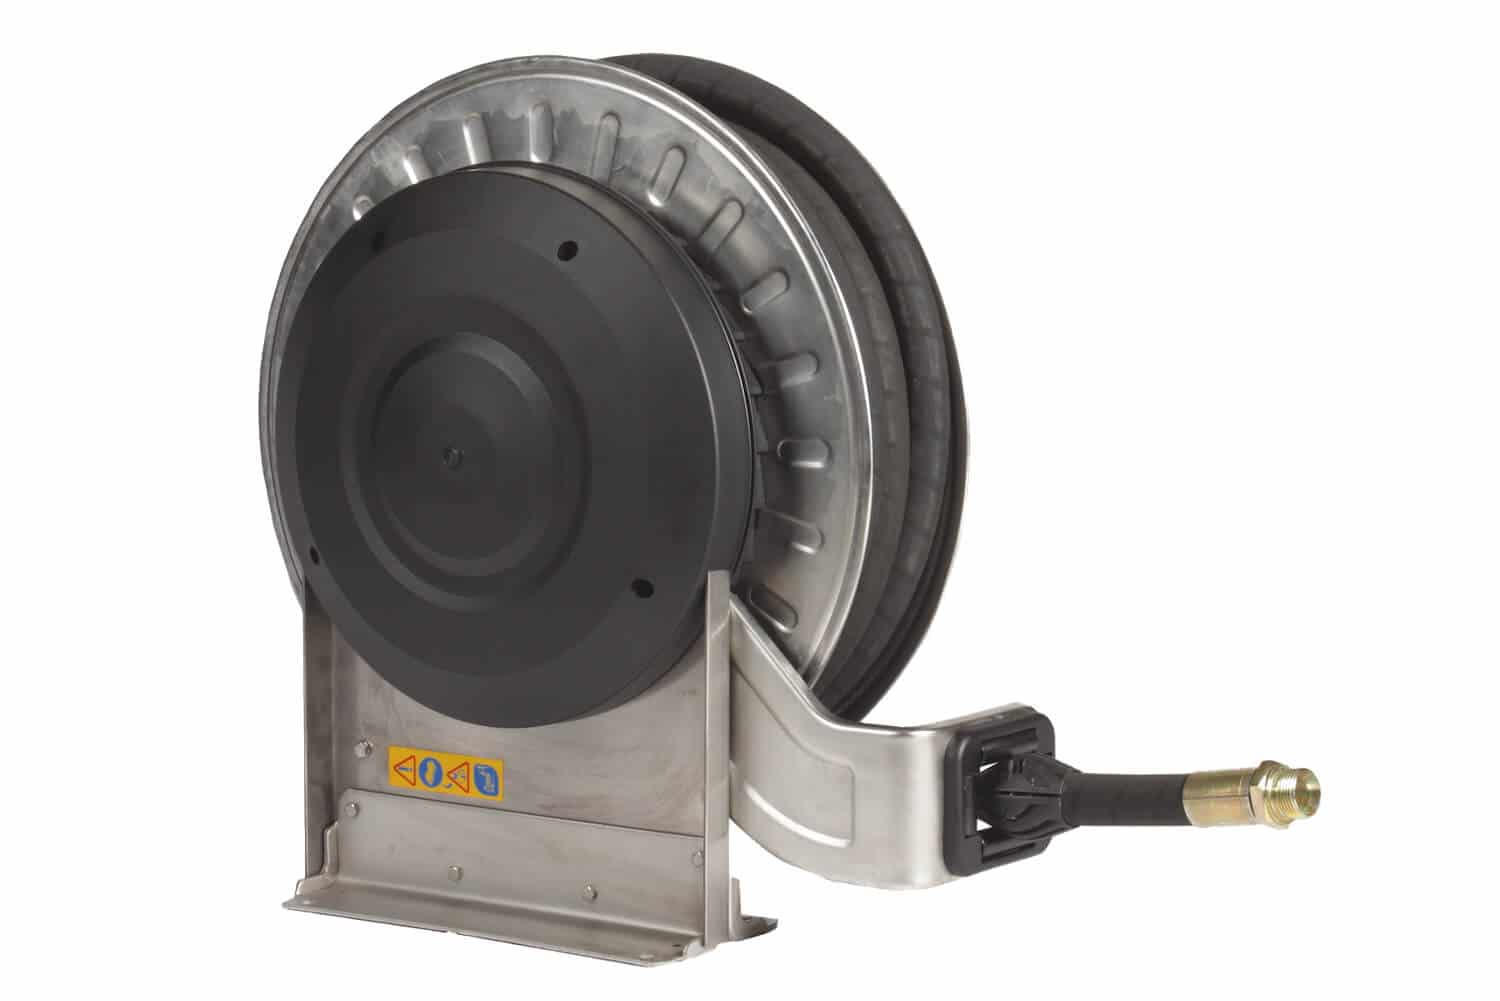 Automatischer Schlauchaufroller für Hochdruck komplett in Edelstahl für bis zu 25 m Schlauch DN 12, zur Wand-, Boden- oder Deckenmontage.